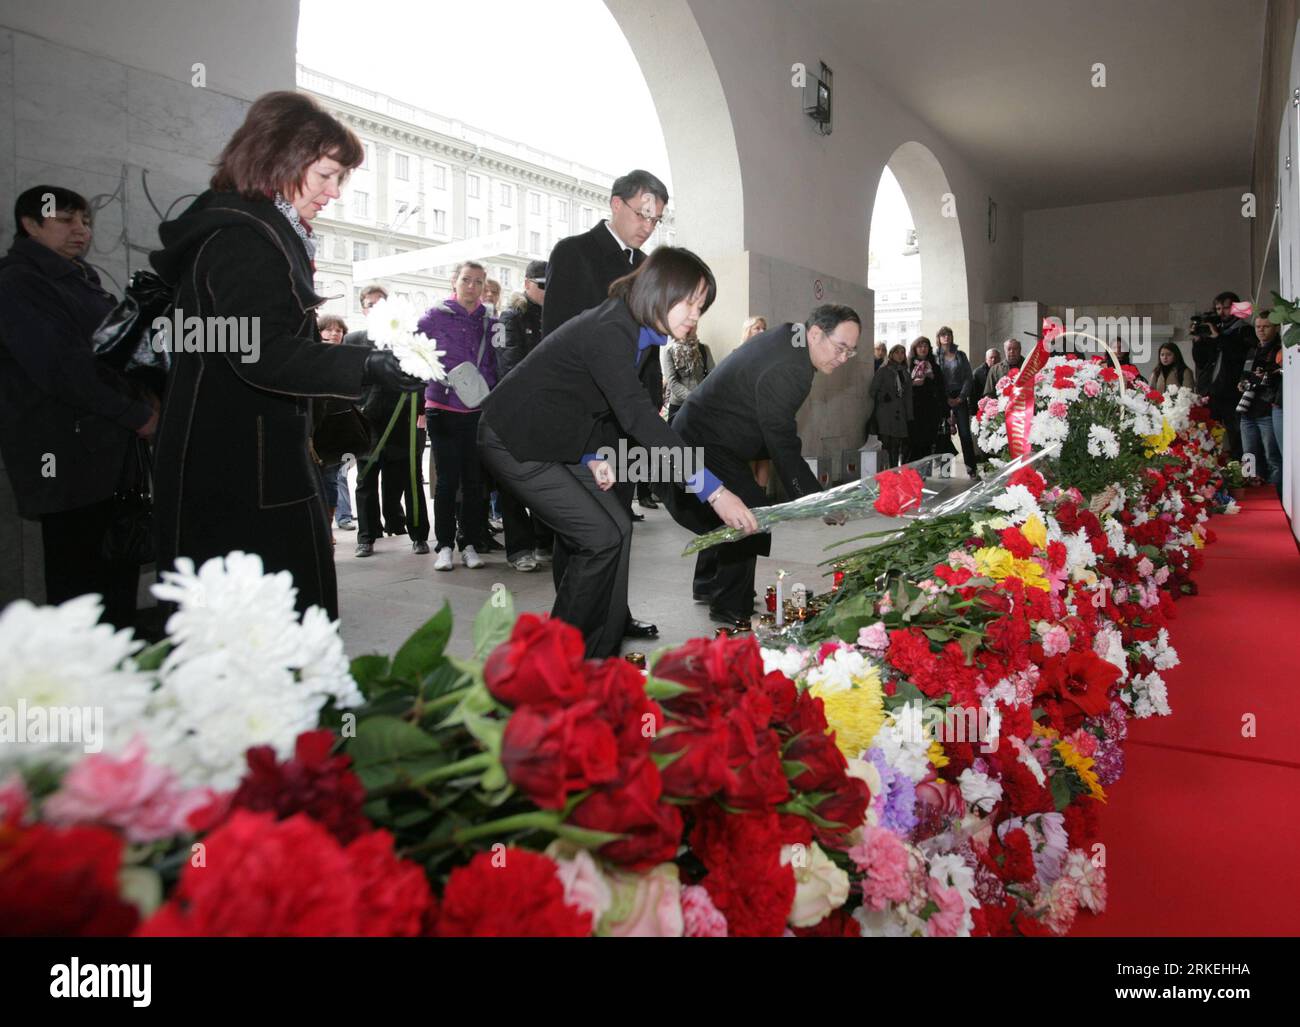 Bildnummer : 55259156 Datum : 13.04.2011 Copyright : imago/Xinhua (110413) -- MINSK, 13 avril 2011 (Xinhua) --des membres de l'ambassade de Chine présentent des fleurs à la station de métro principale Oktyabrskaya à Minsk, capitale de la Biélorussie, le 13 avril 2011. La Biélorussie a déclaré mercredi un jour de deuil pour ceux qui ont été tués lundi dans un attentat à la bombe dans la capitale.(Xinhua) (cl) BELARUS-MINSK-BLAST-DEUIL-CHINESE EMBASSY PUBLICATIONxNOTxINxCHN Politik UBahn Anschlag Terror Terroranschlag Bombenanschlag bombe Trauer Gedenken kbdig xub juin 55259156 Date Bilnumder Blumen 13 04 2011 Banque D'Images